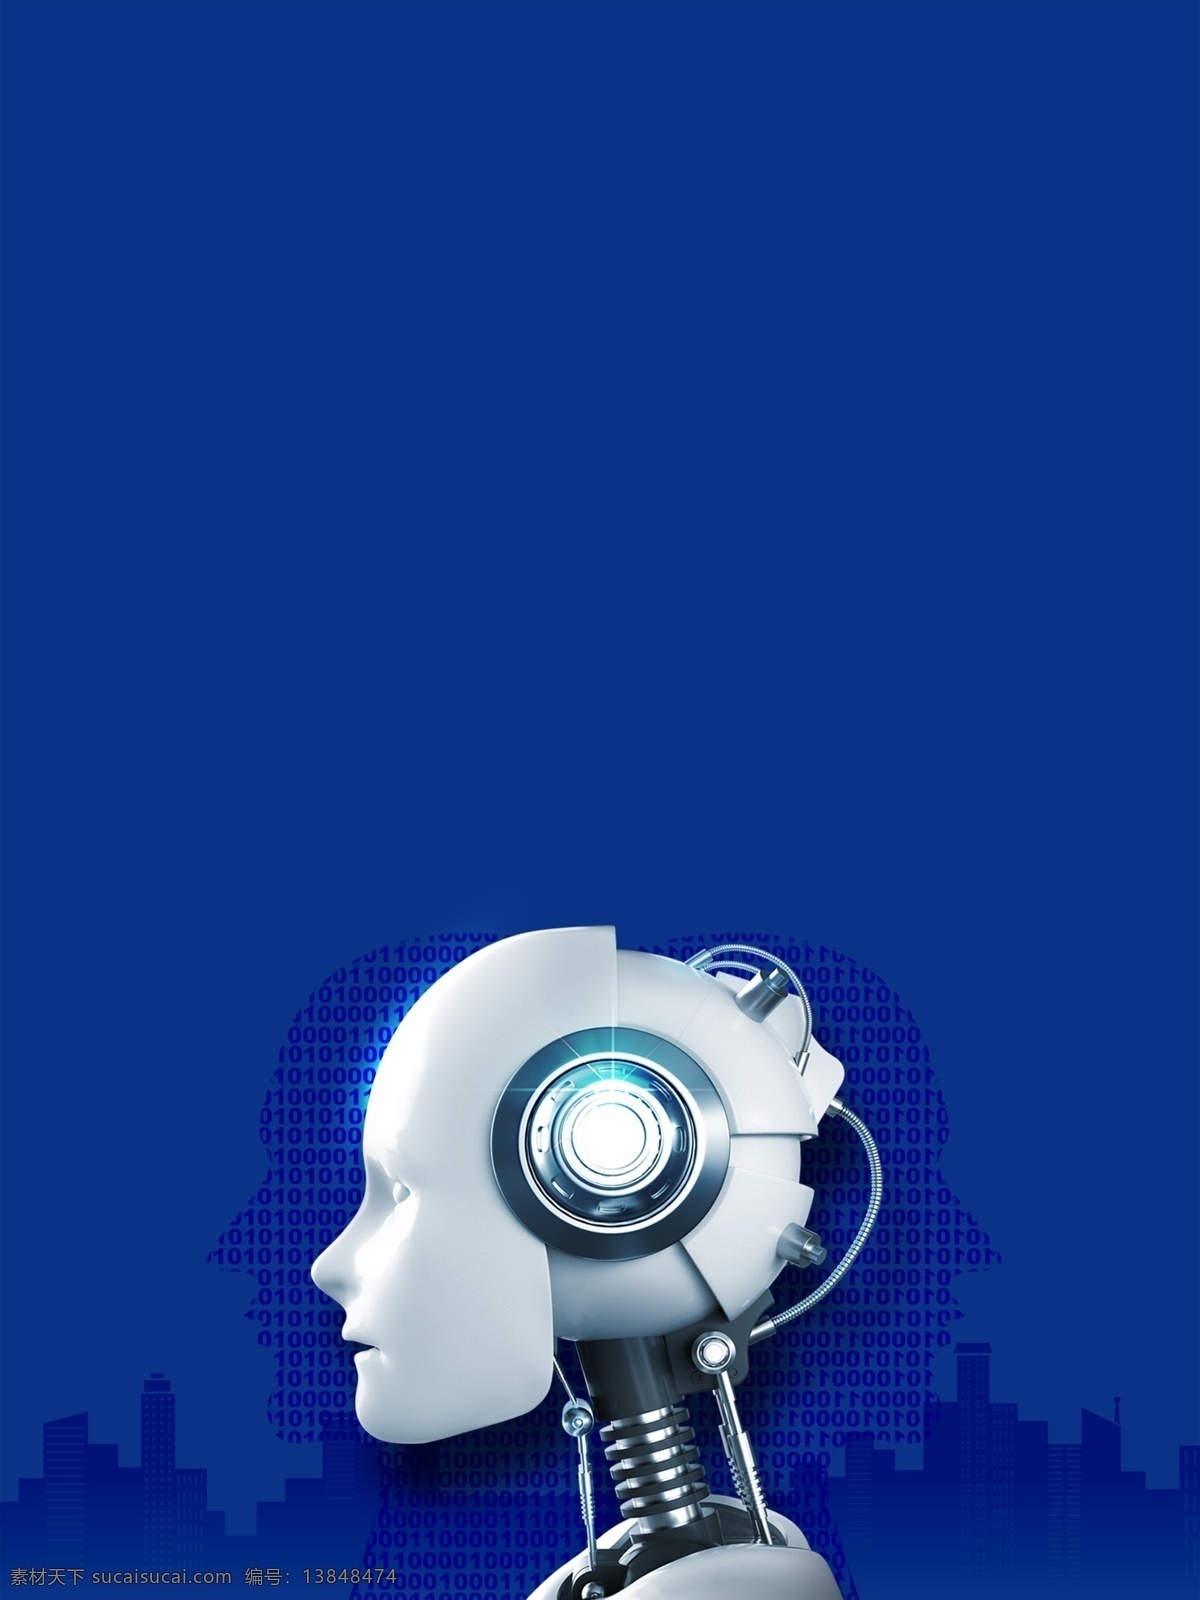 创意 时尚 智能 科技 人脸 识别 背景 背景素材 蓝色背景 机器人 立体 动感 广告背景 广告背景素材 信息技术